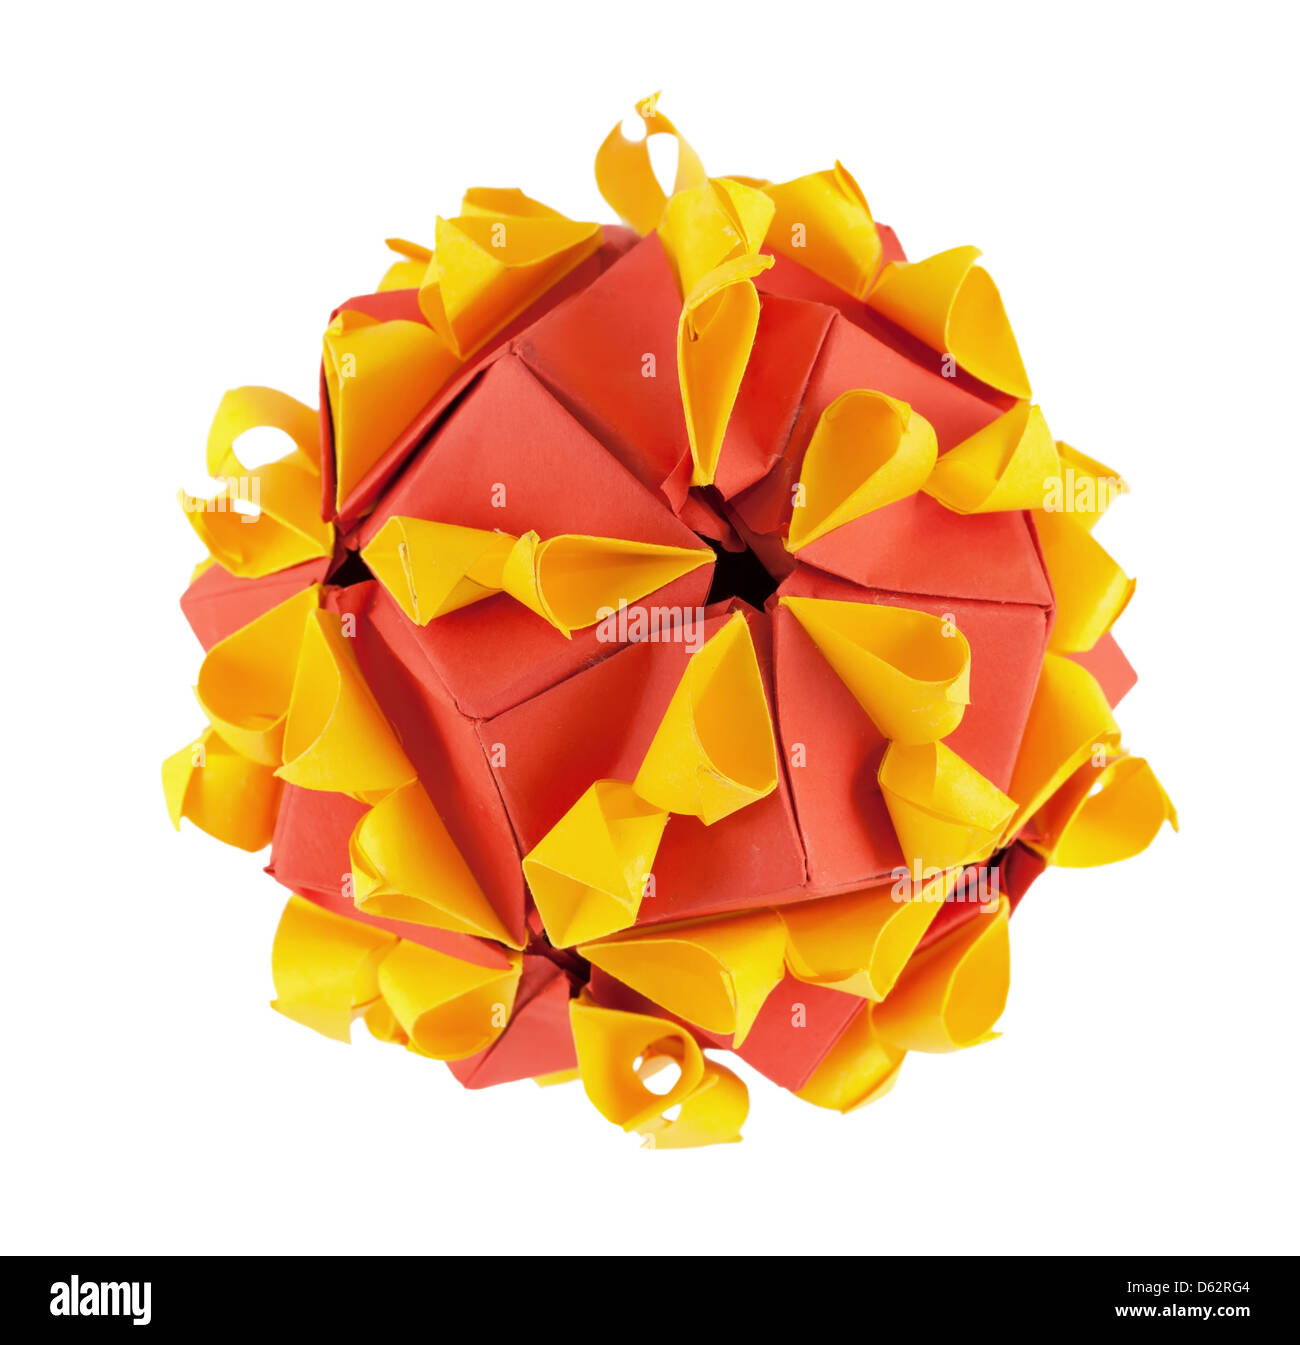 Red and yellow origami kusudama Stock Photo